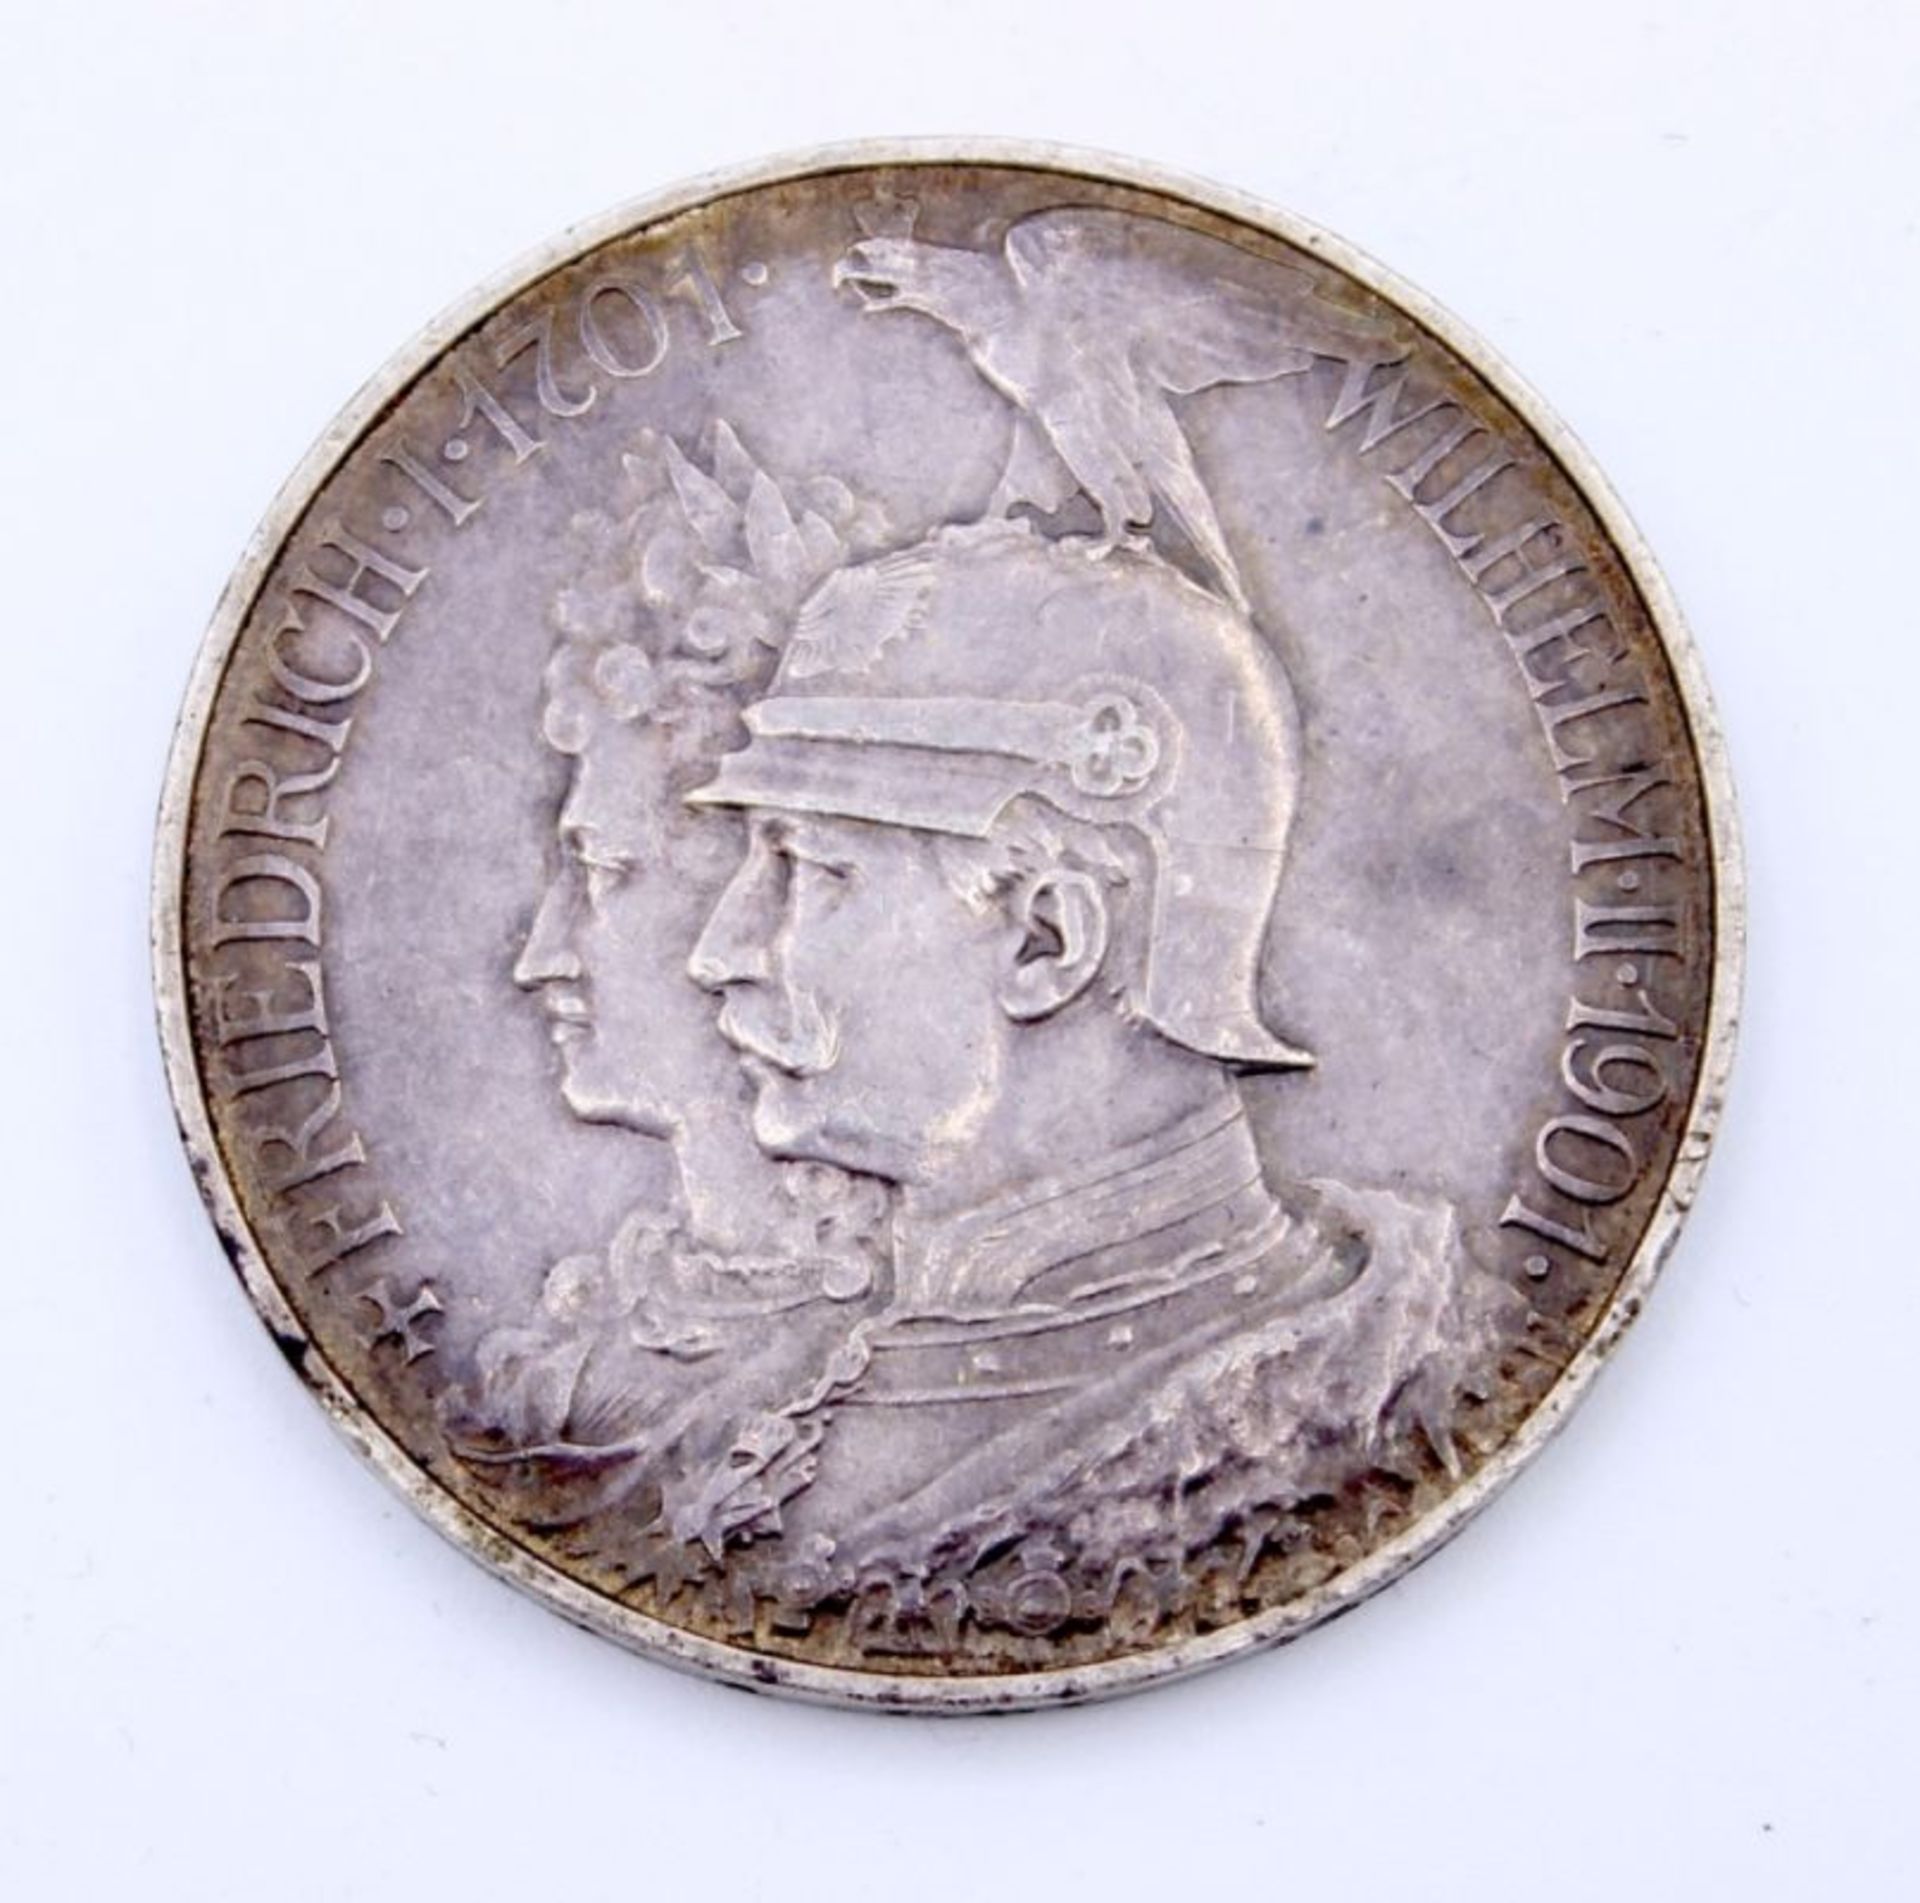 Silbermünze - 5 Mark DR 1901, Friedrich I. 1701-Wilhelm II. 1901, 200 Jahre Kaiserreich